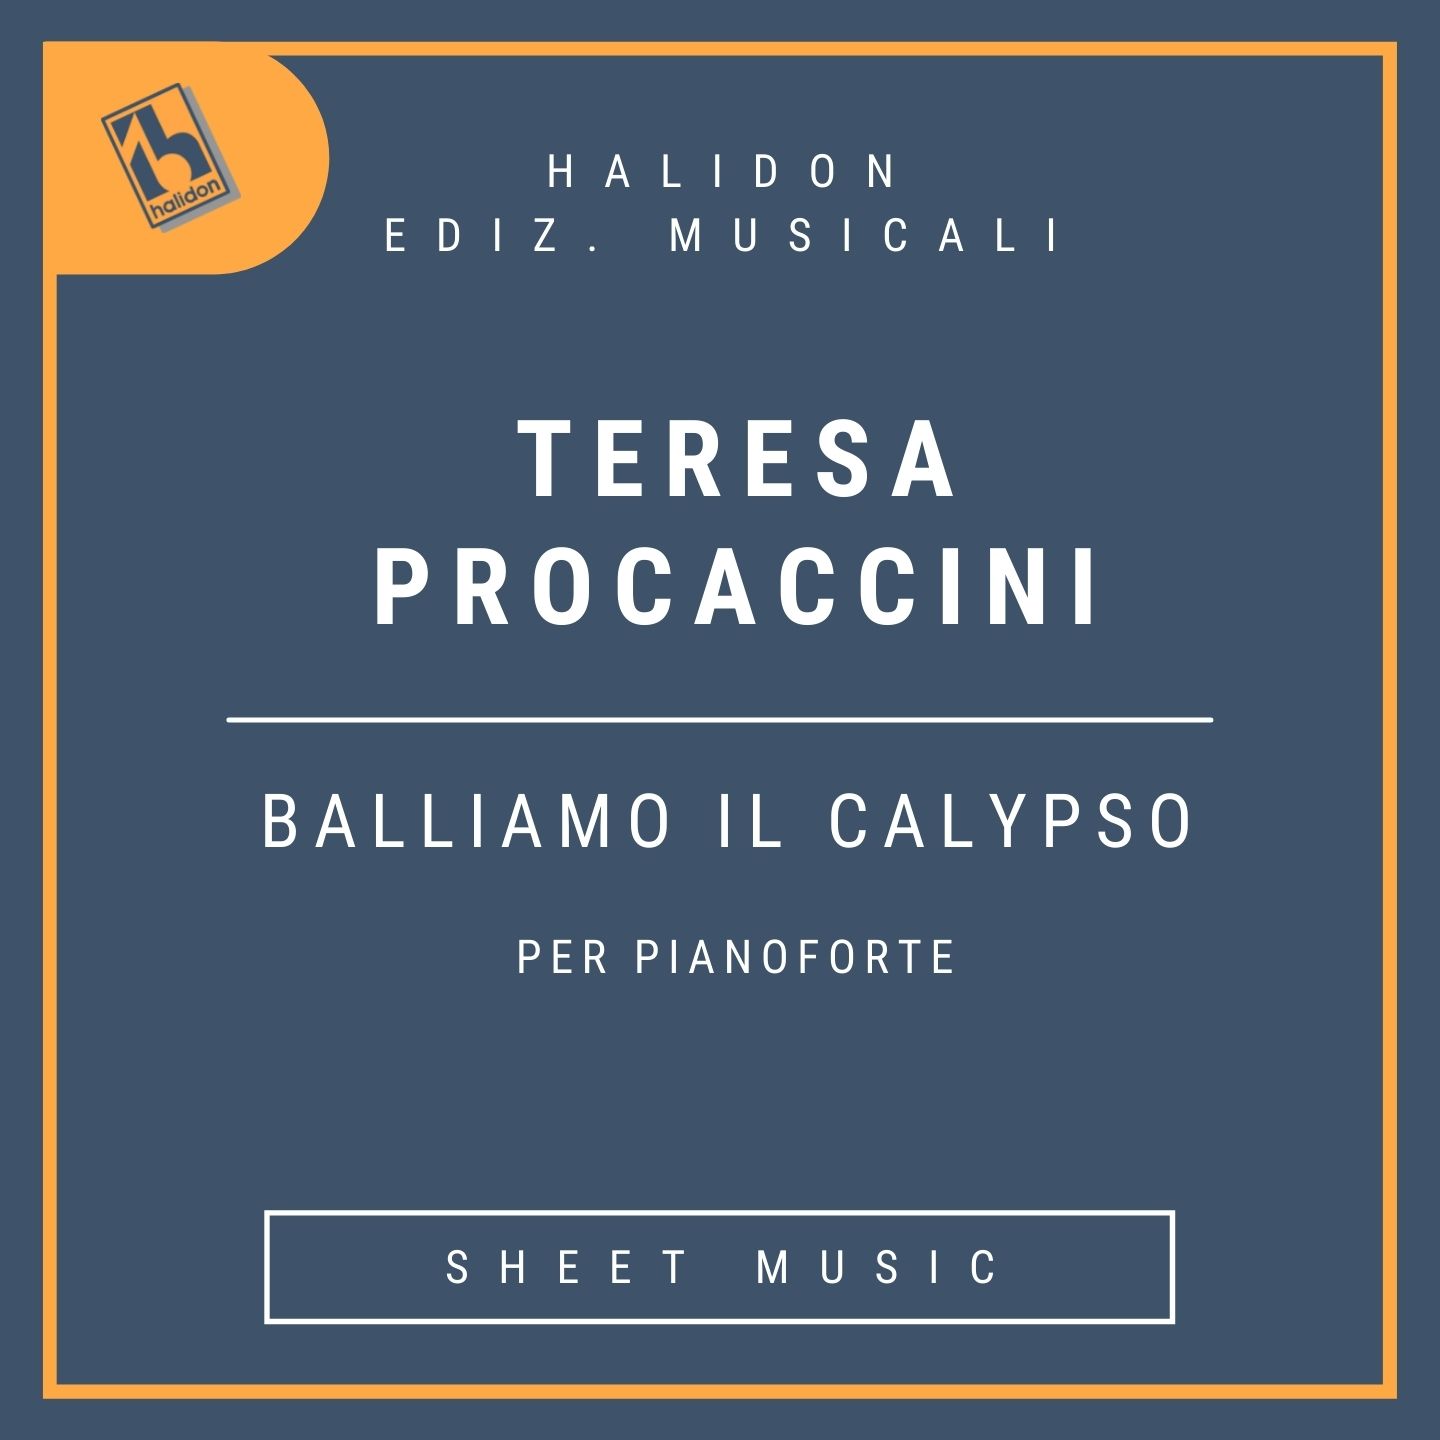 Teresa Procaccini - Balliamo il calypso